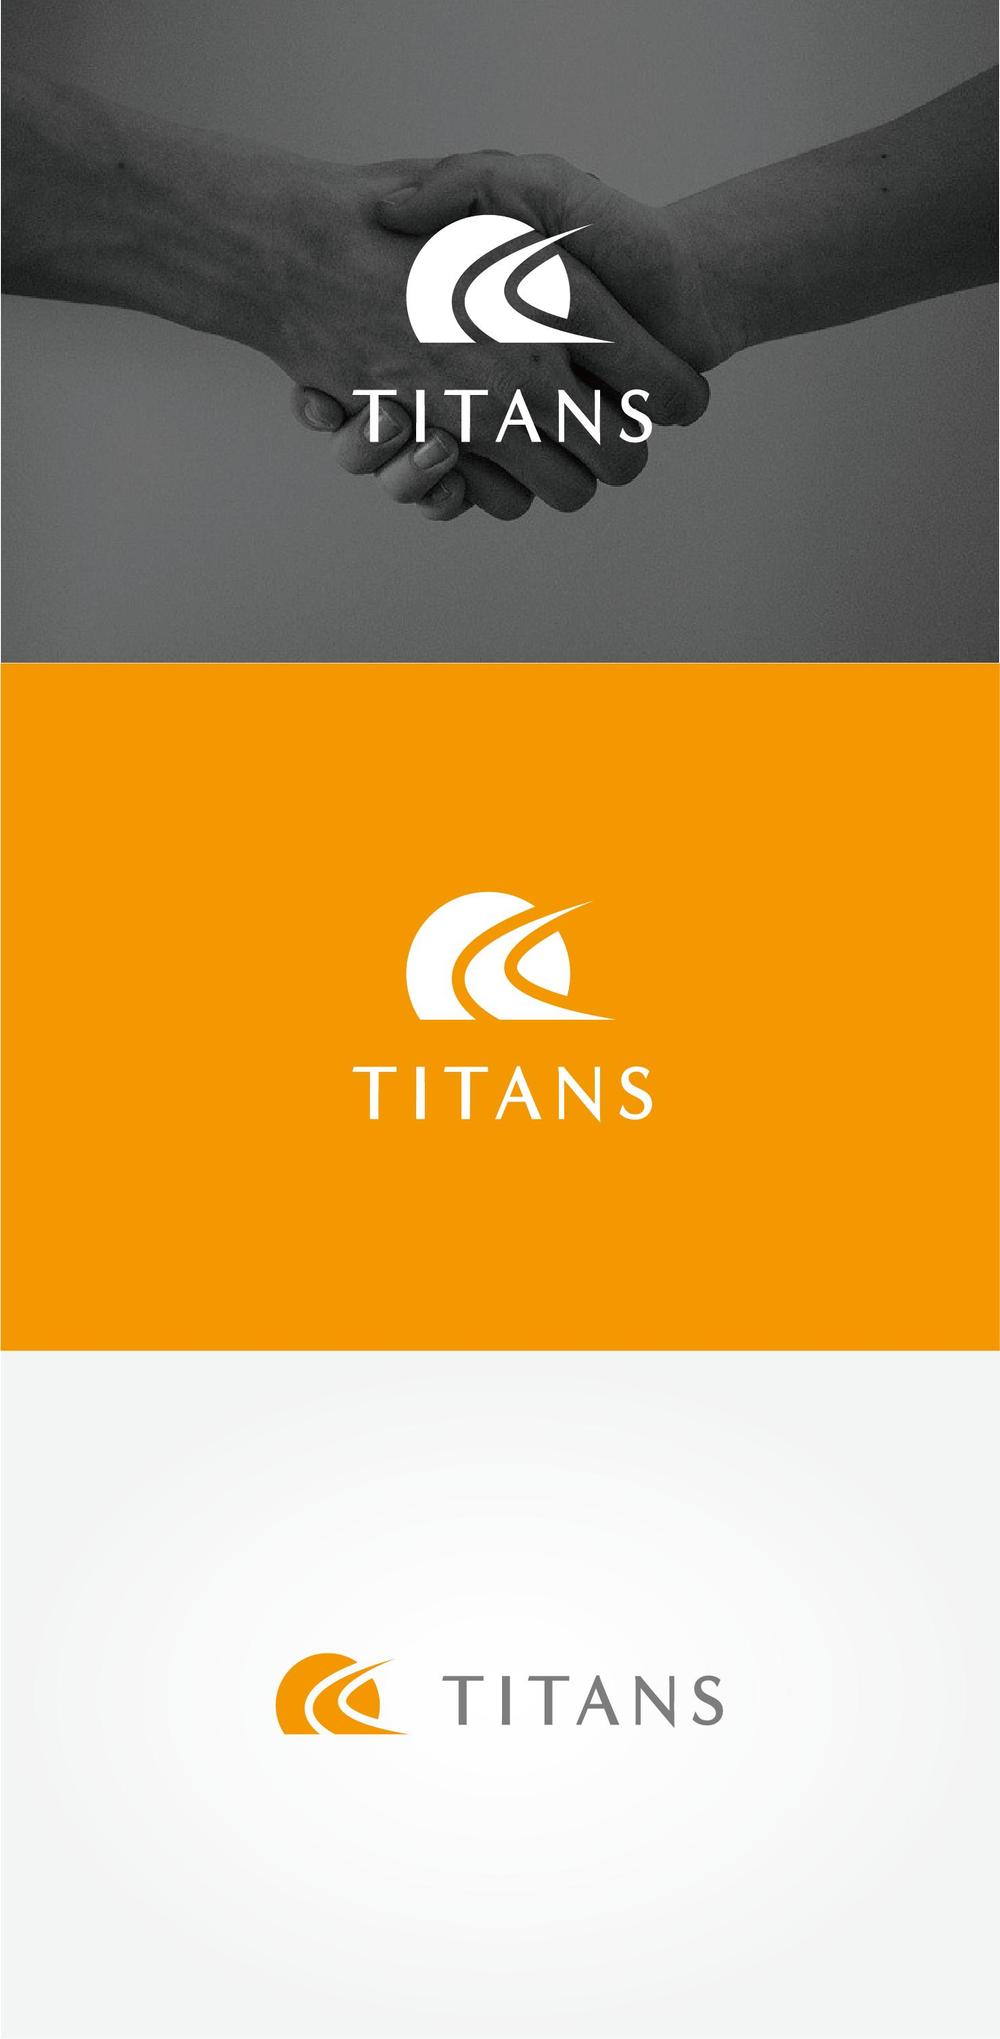 株式会社タイタンズという会社のロゴの依頼です。